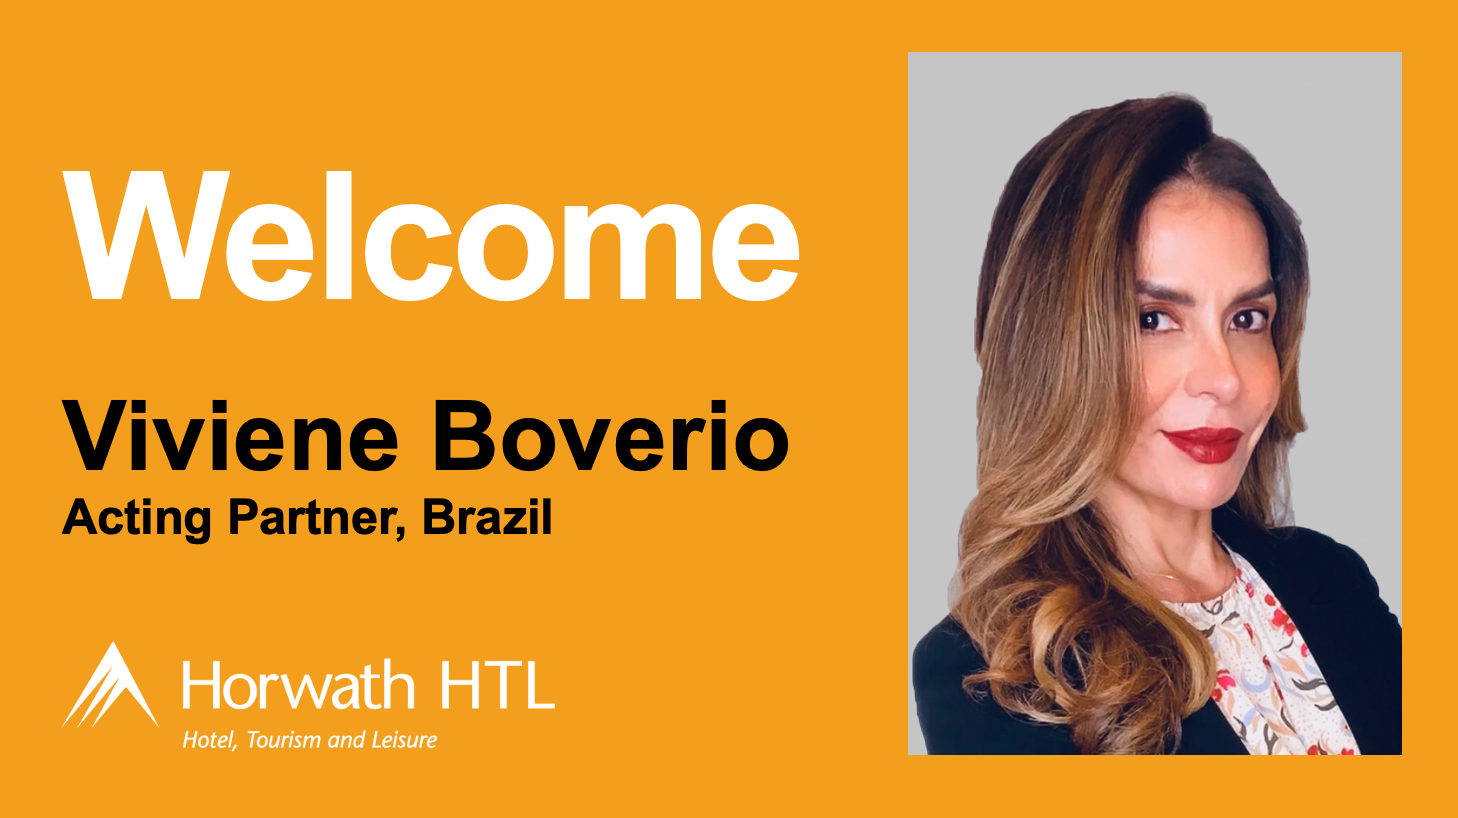 Viviene Boverio joins Horwath HTL, Brazil as New Acting Partner